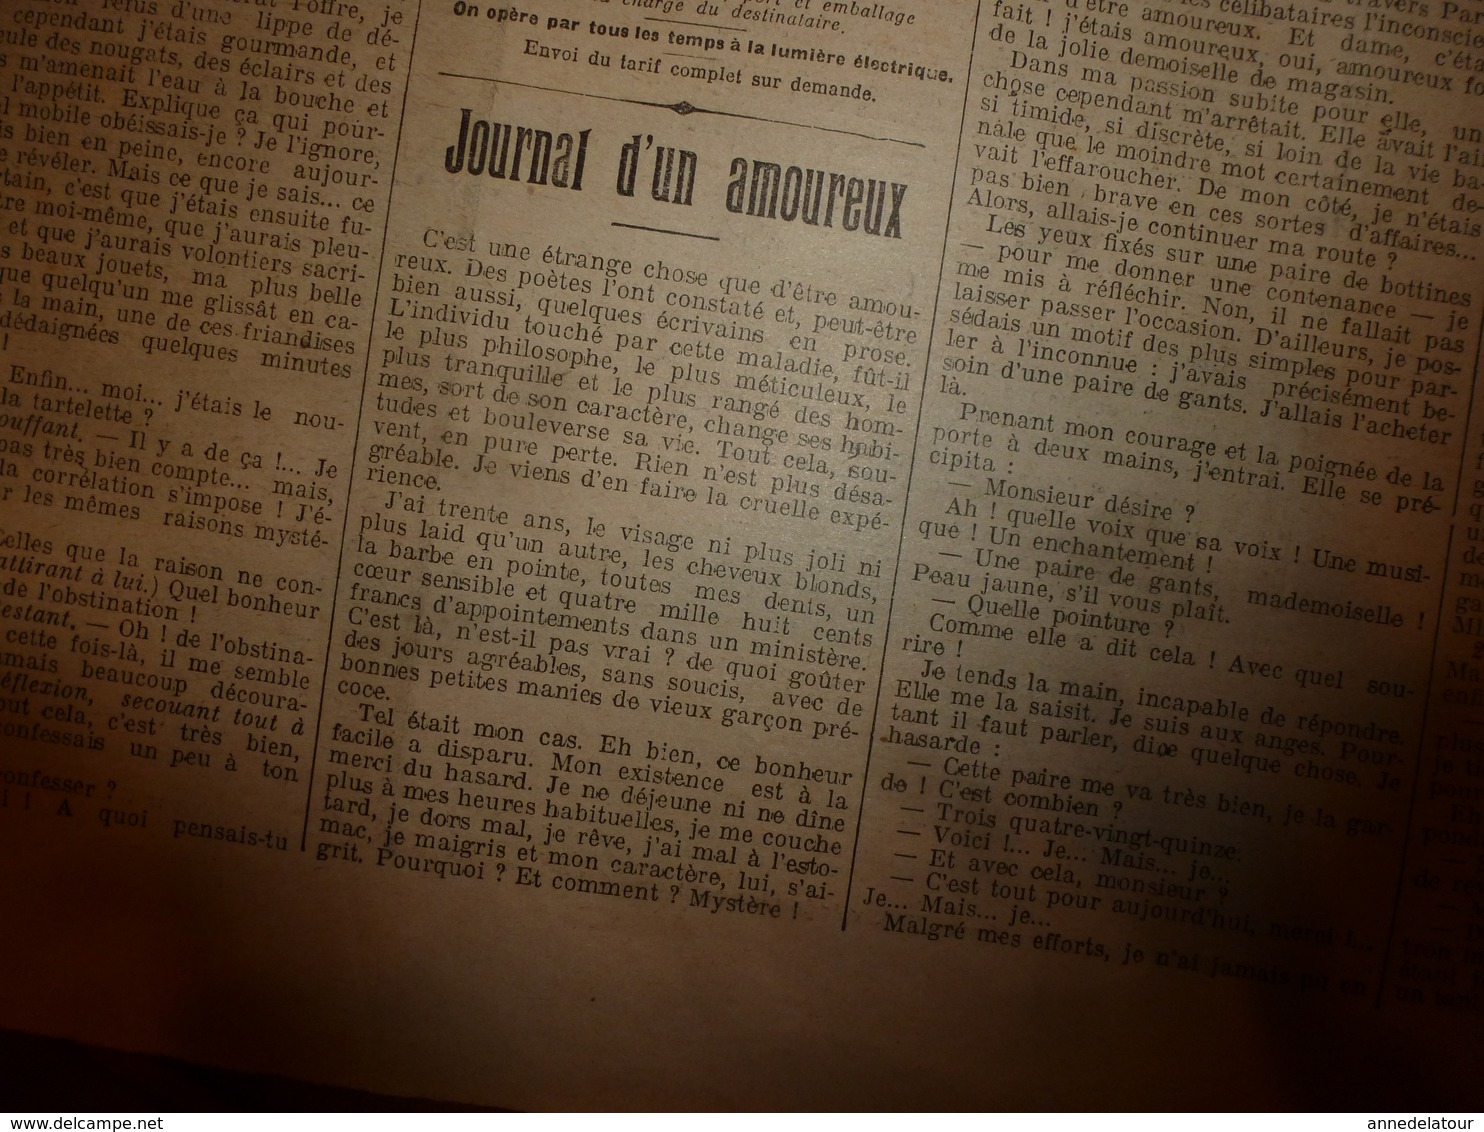 1908 LE PETIT JOURNAL:Supplice marocain à Marakech; Celestin Branchu le gréviste de Commercy;Journal d'un amoureux;etc